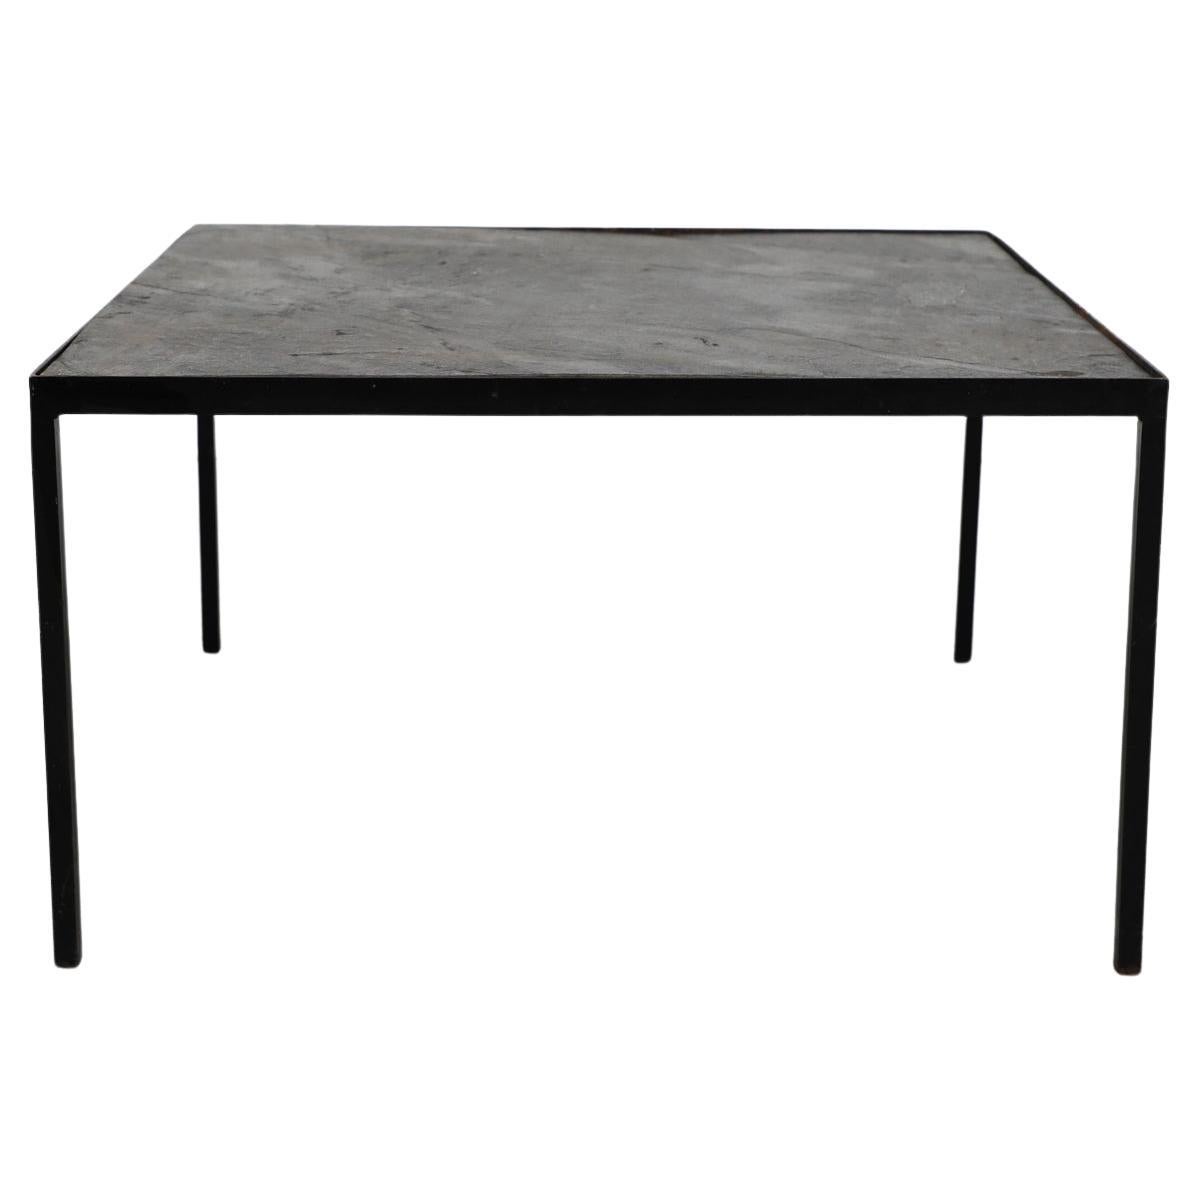 Artimeta Stone Top Coffee Table with Black Enameled Base